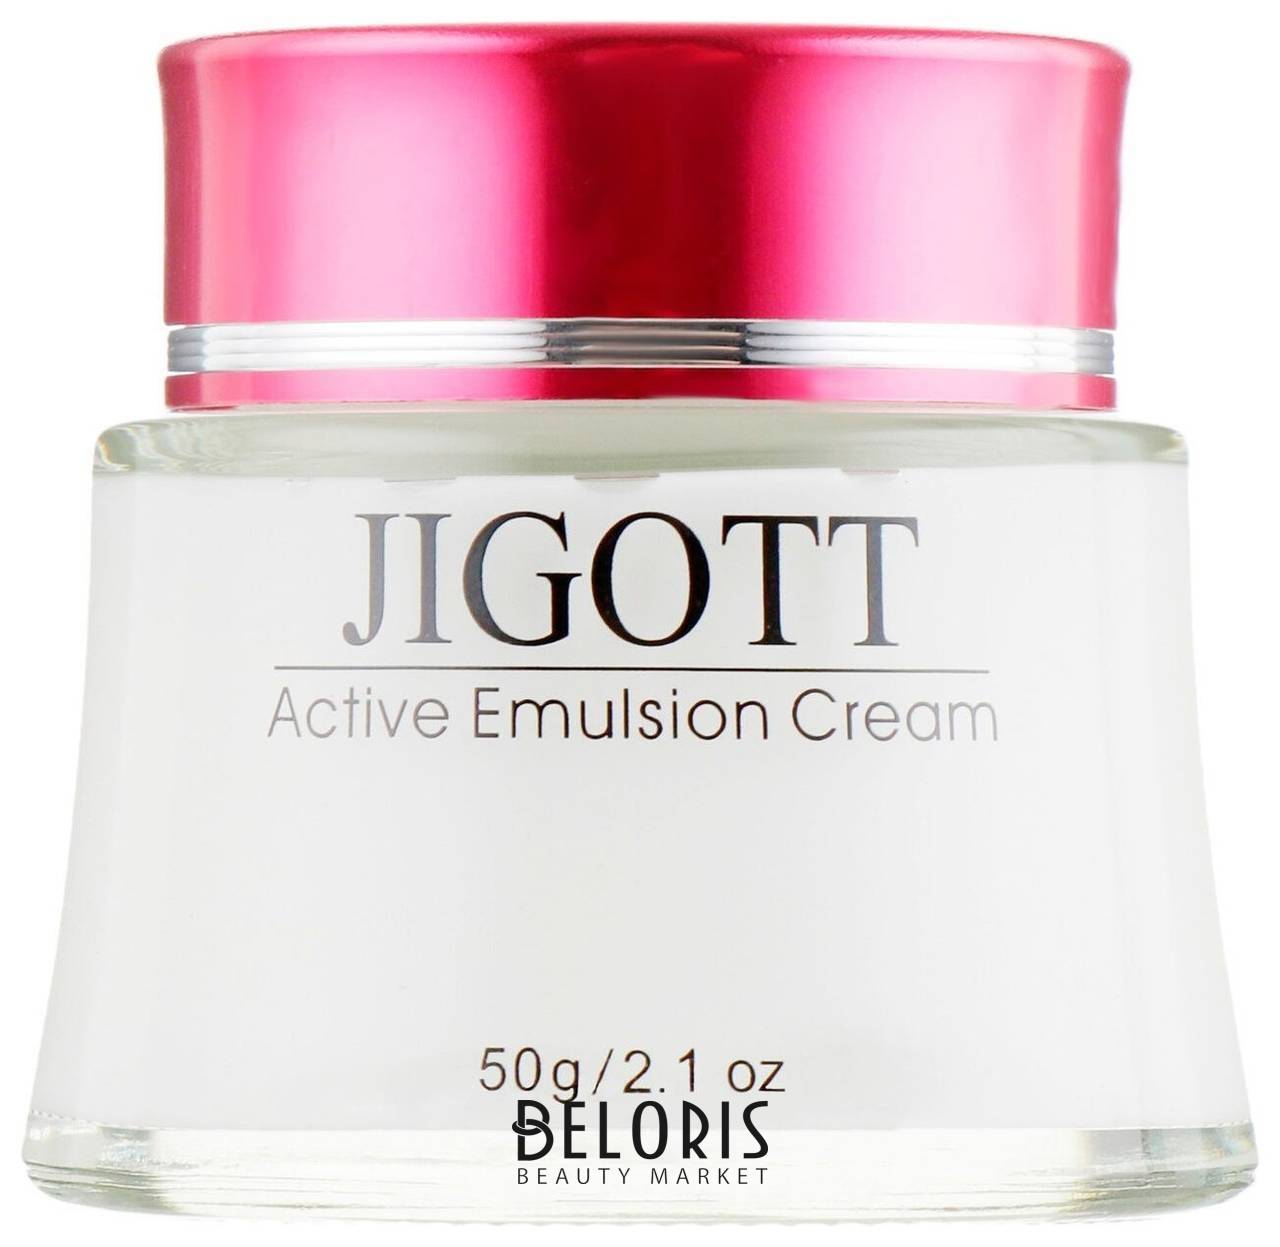 Интенсивно увлажняющий крем-эмульсия Active Emulsion Cream Jigott